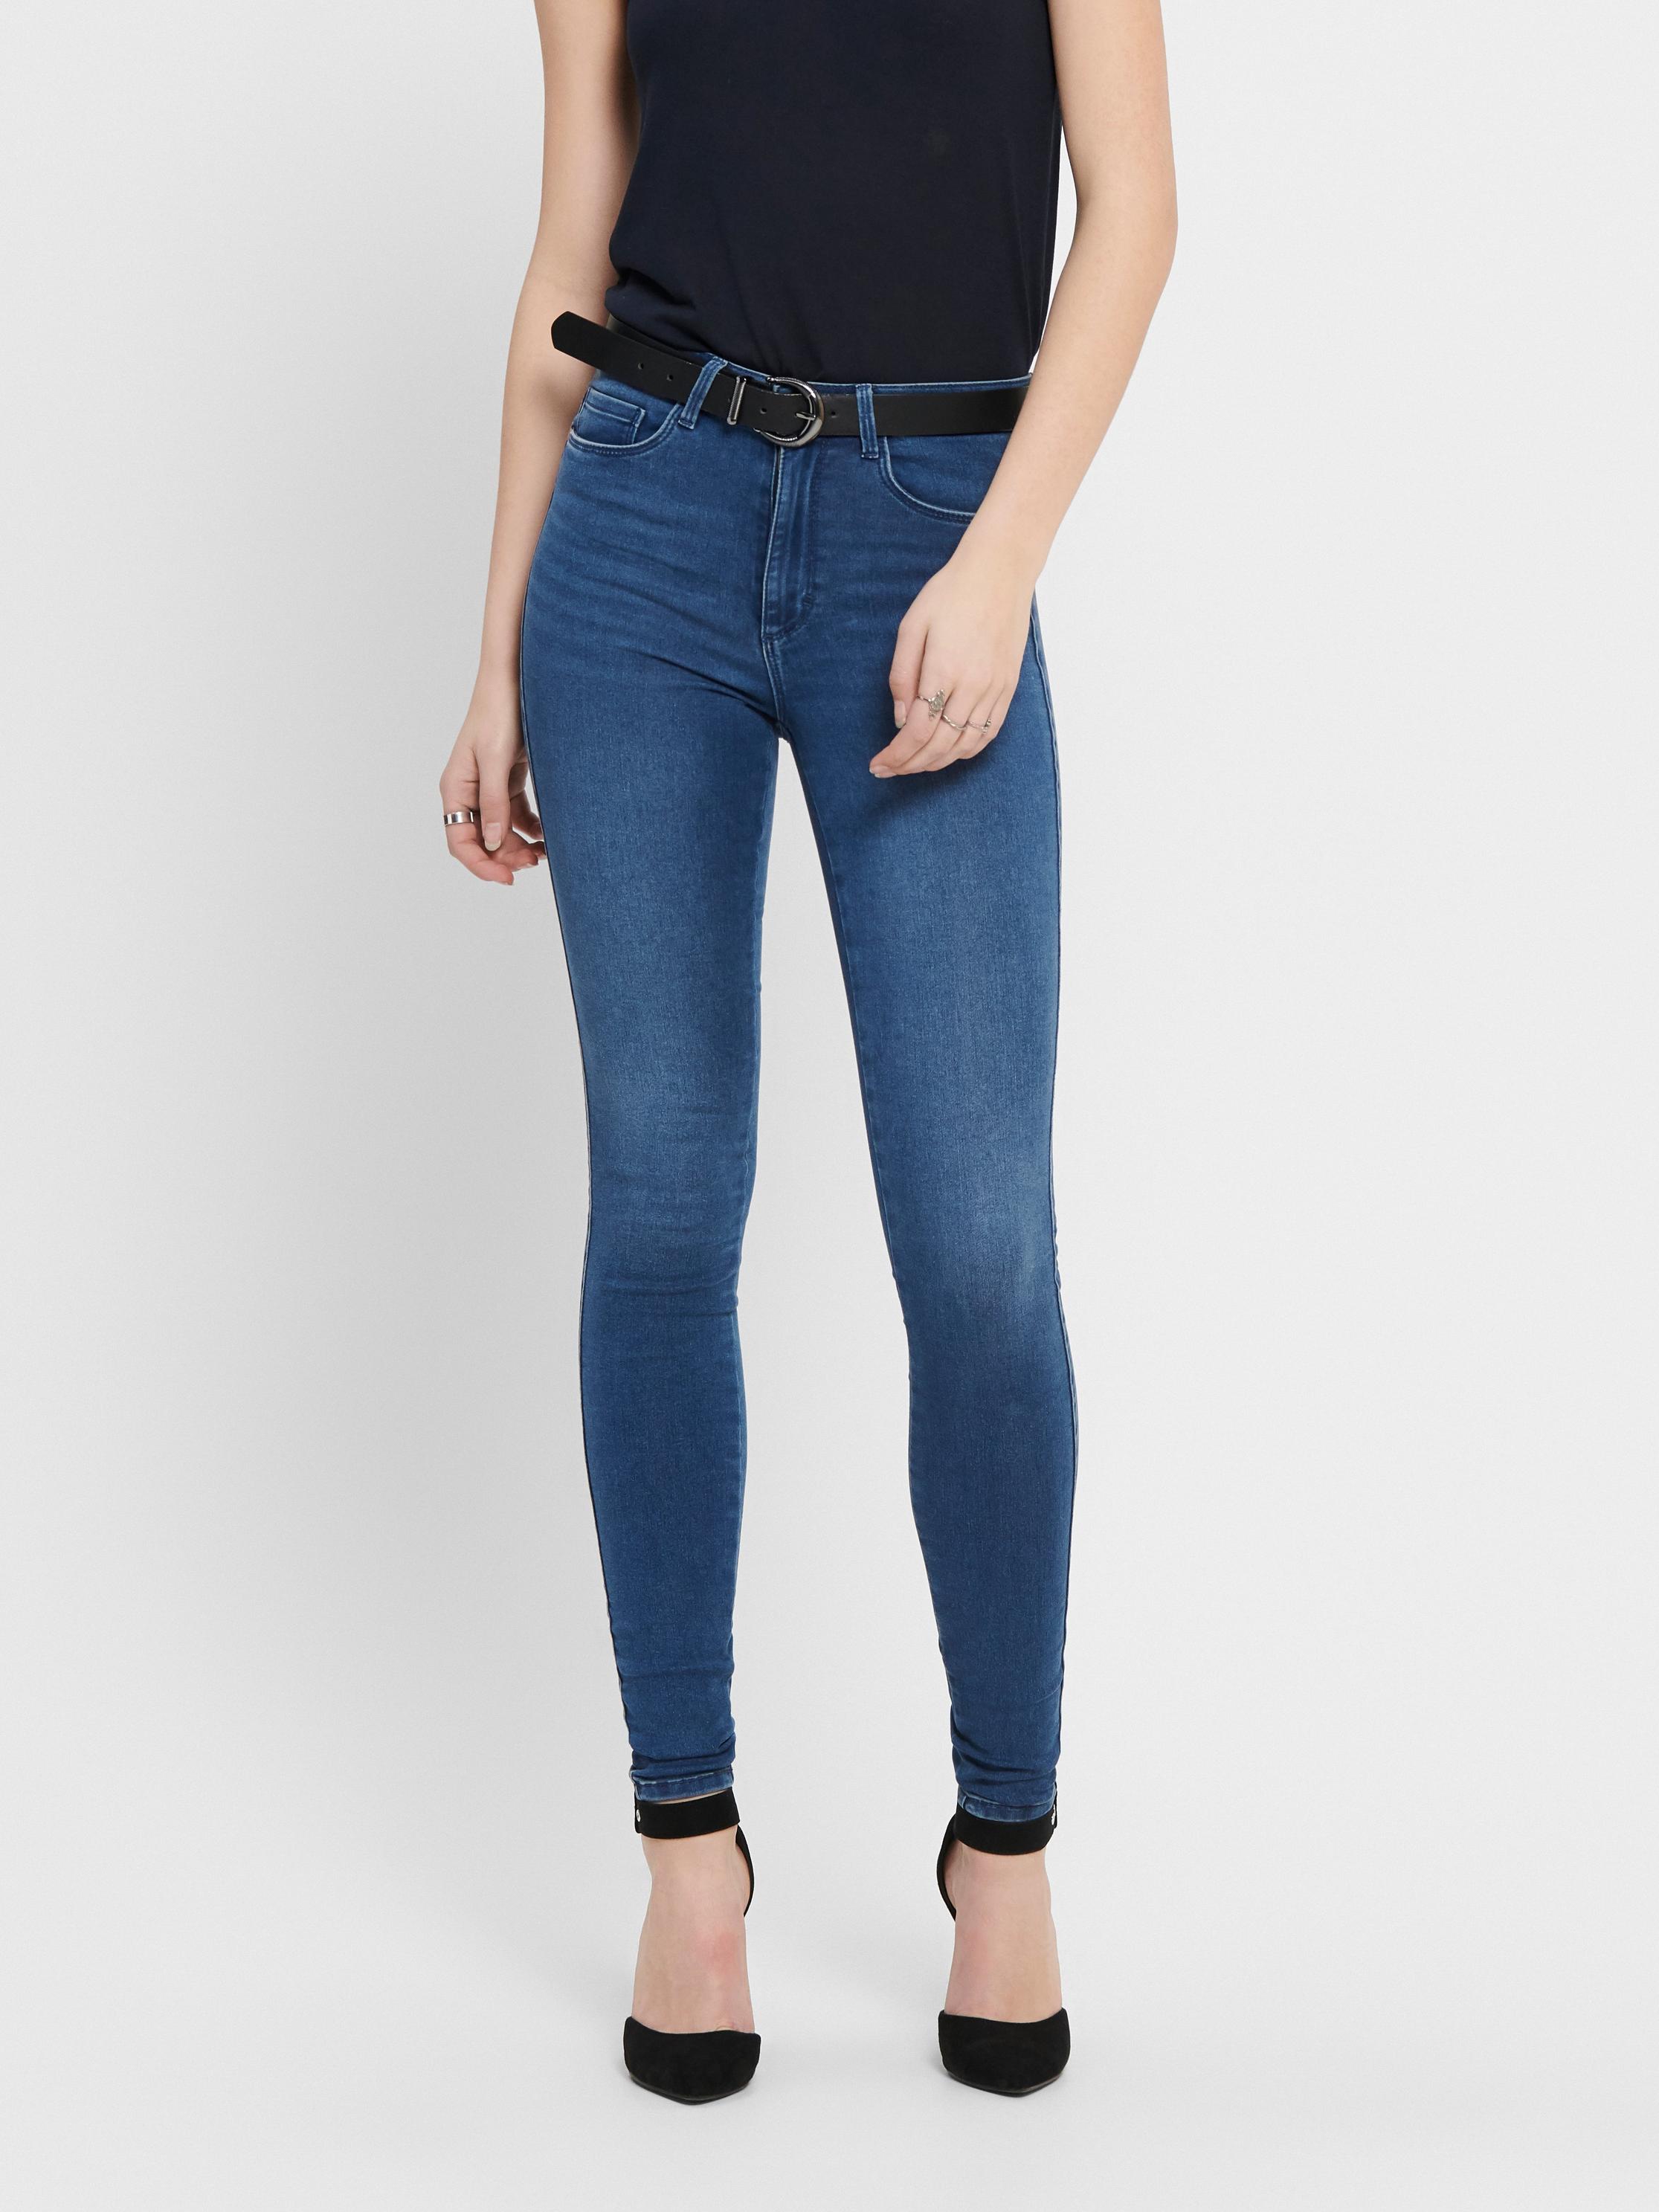 Aanbieding van ONLRoyal high-waist Skinny jeans voor 29,95€ bij Only